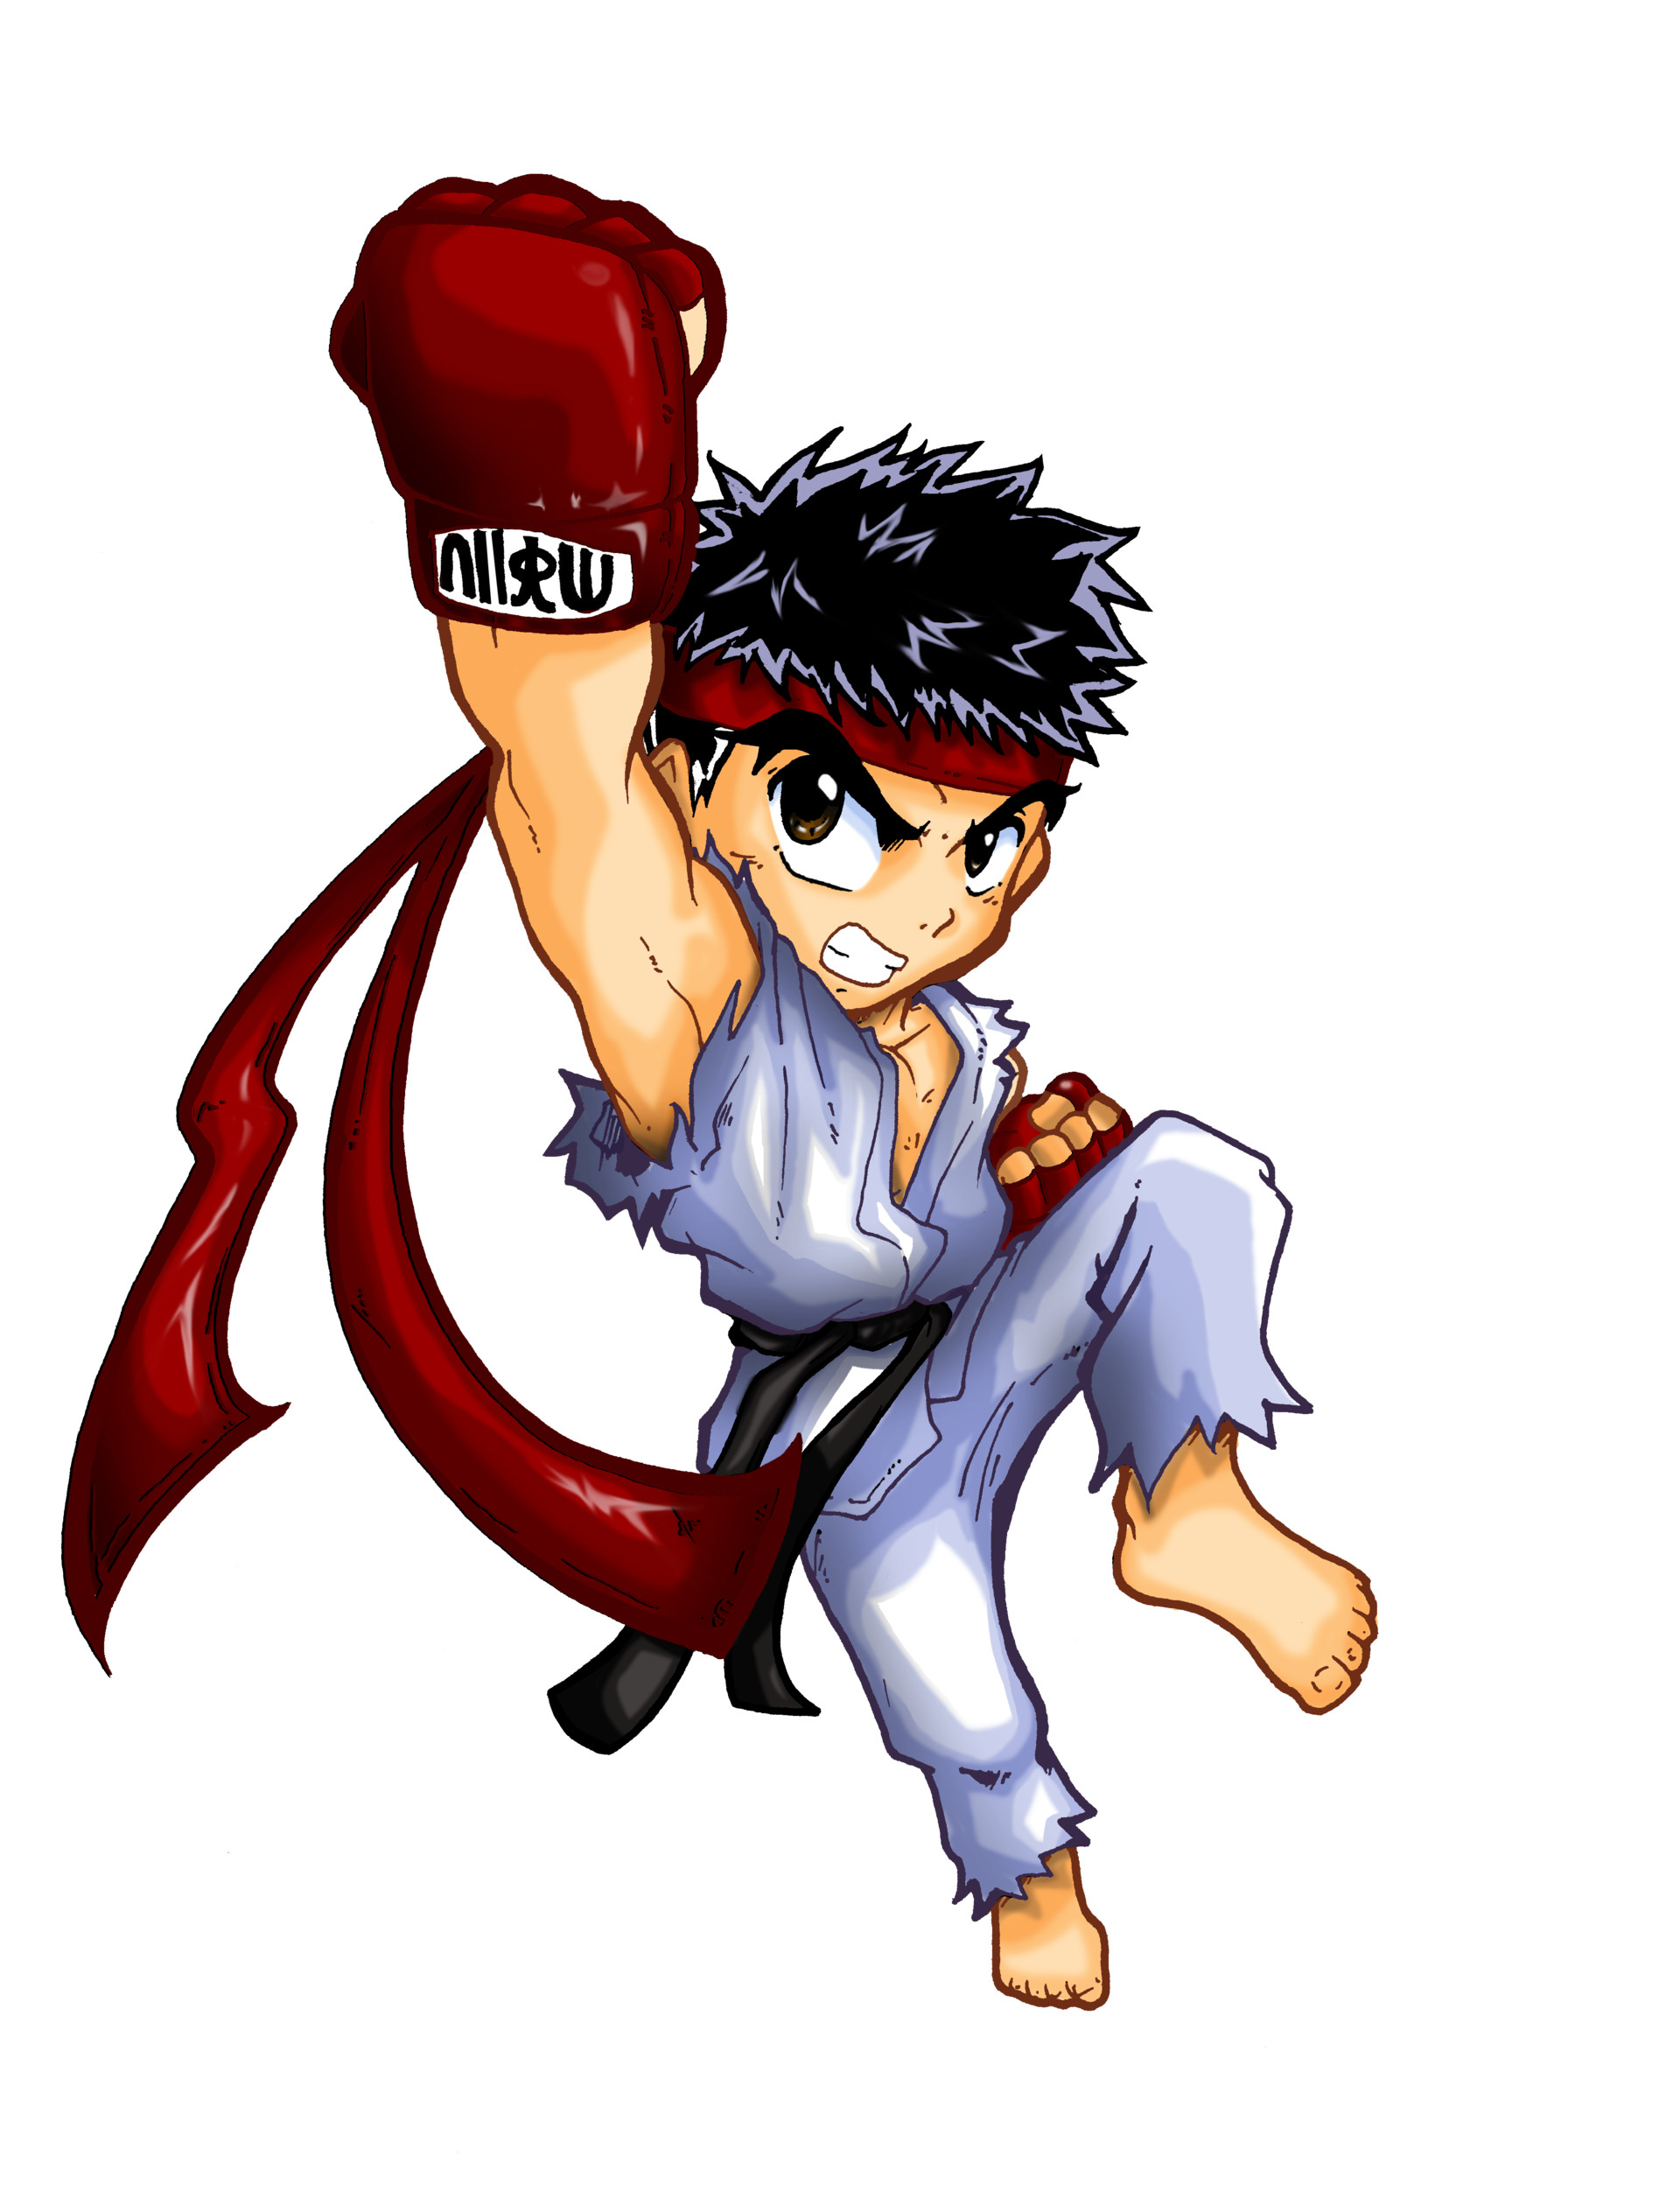 ArtStation - Fanart Ryu Street Fighter